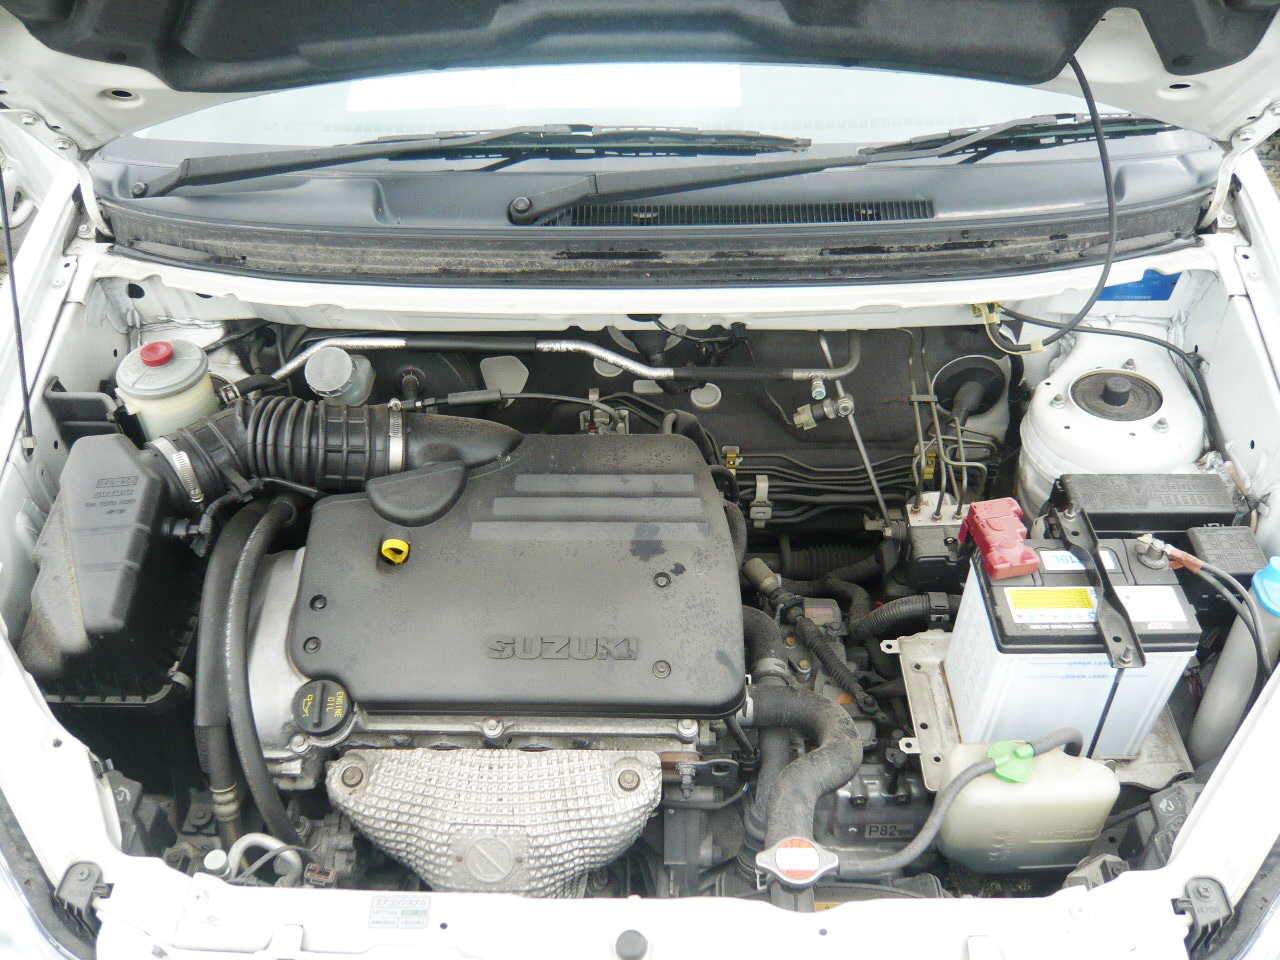 2003 Suzuki Aerio Wagon specs, Engine size 1800cm3, Fuel type Gasoline